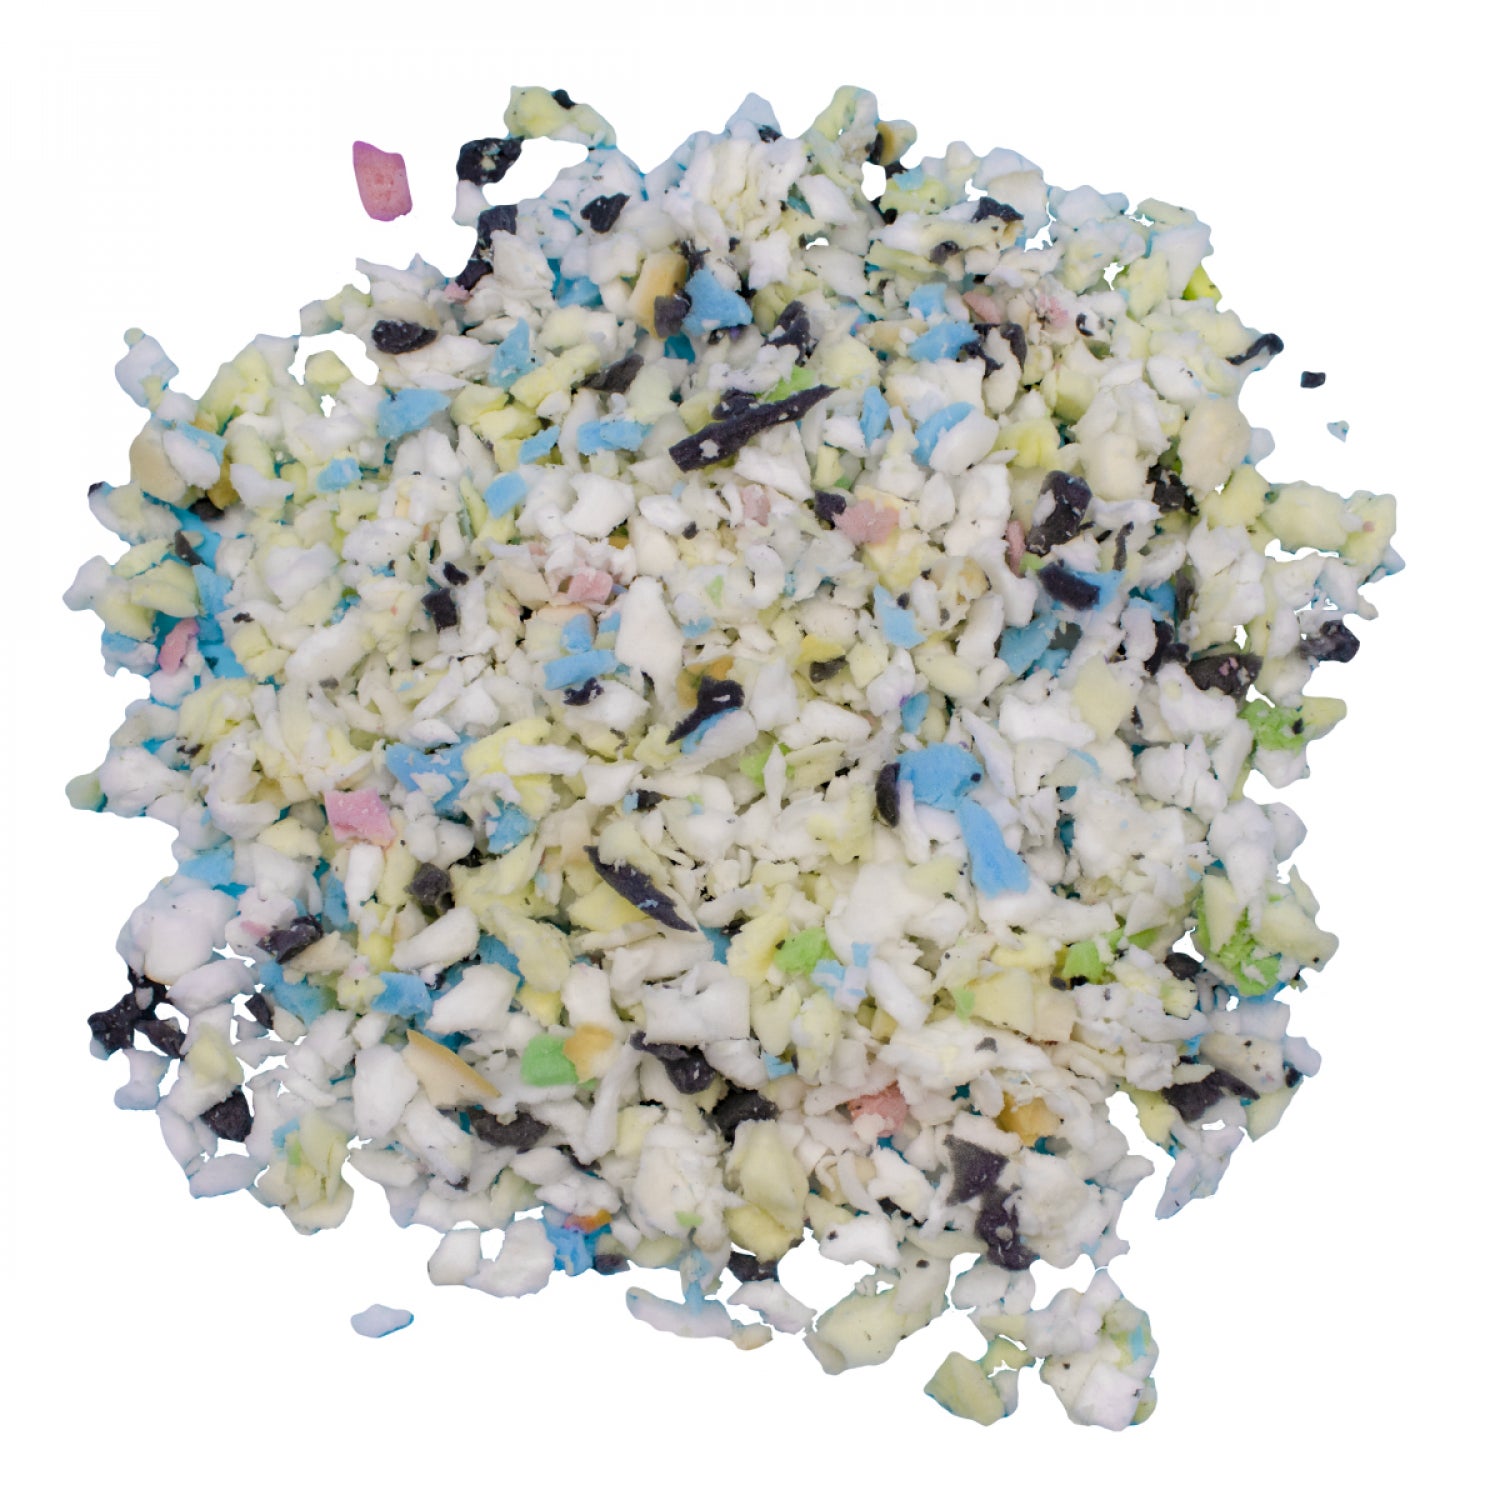 Billes de polystyrène recyclé - 1000L